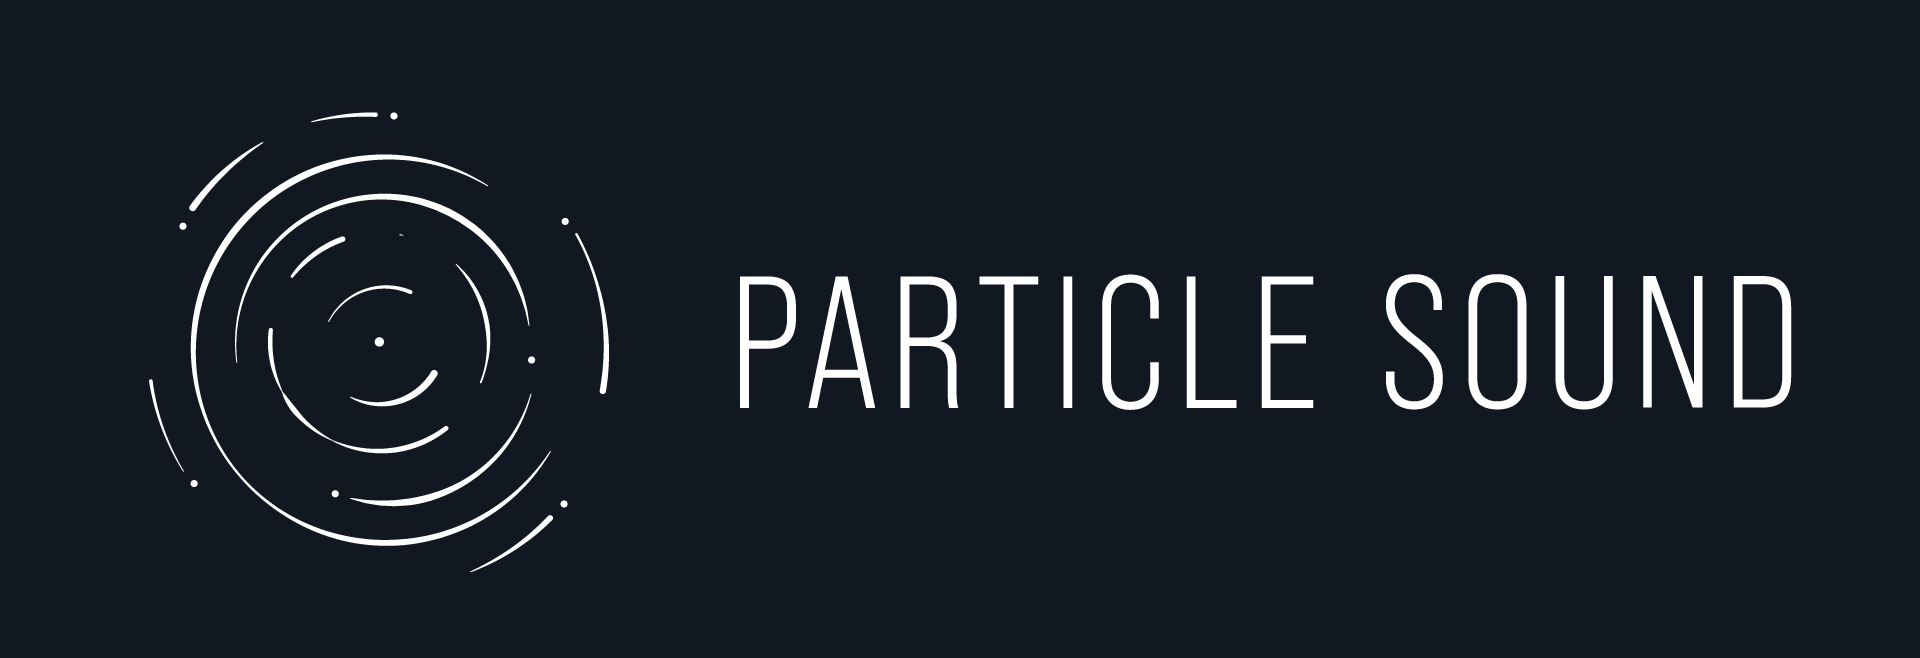 ParticleSound-horizontalversion-byYvonneHartmann